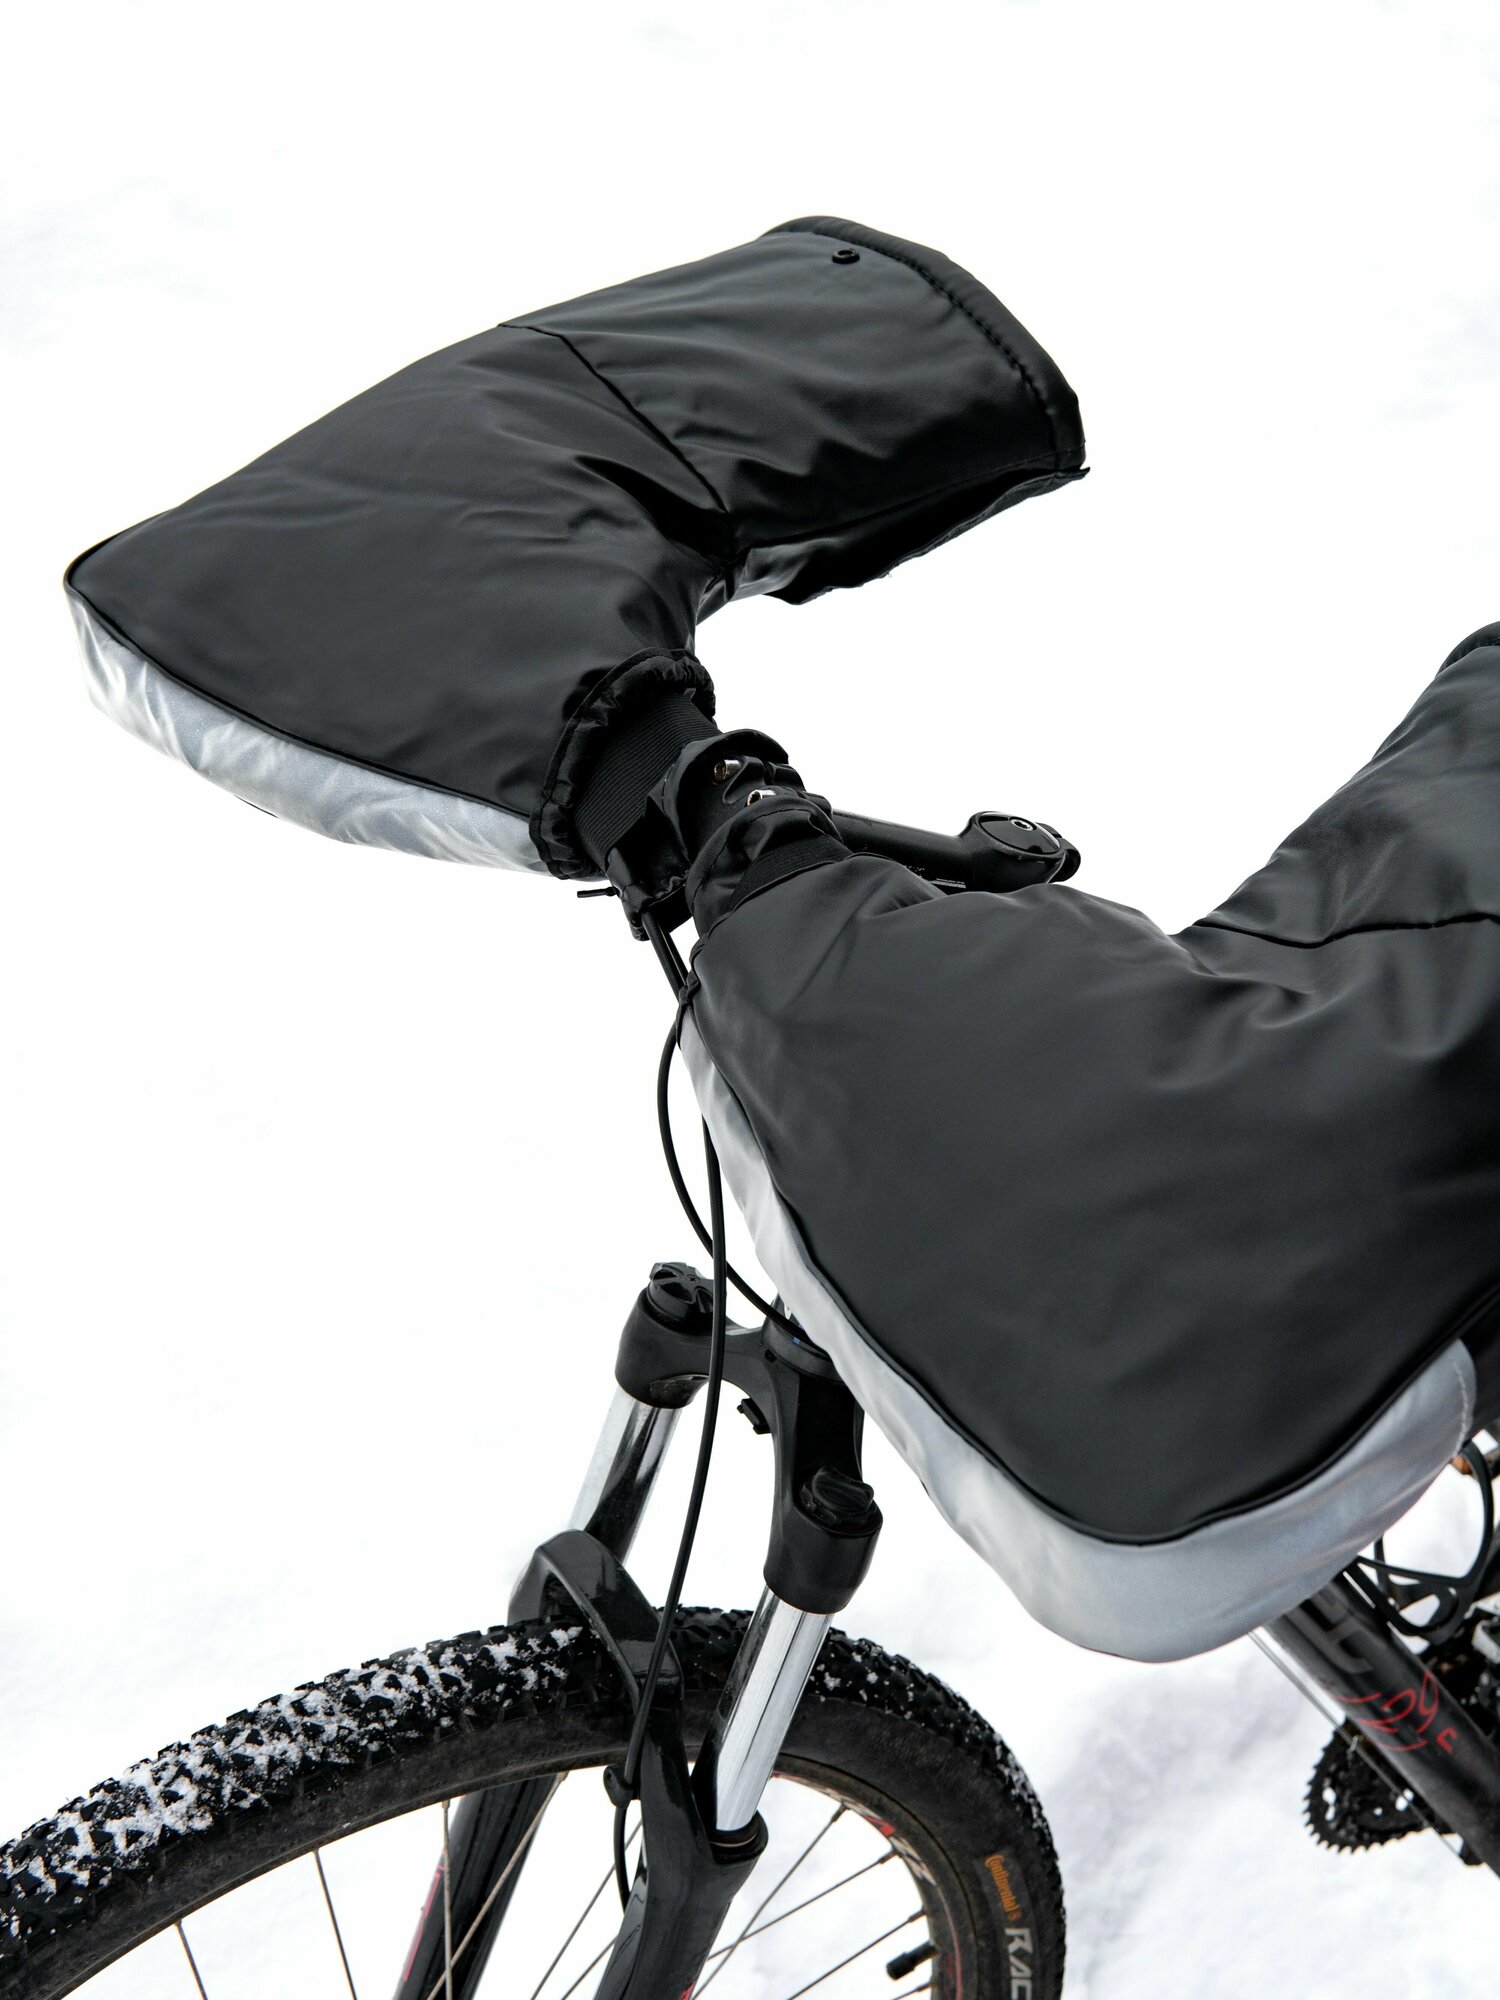 Утепленные, непромокаемые Муфты-варежки на руль: для велосипеда, мопеда, снегохода, мотоцикла